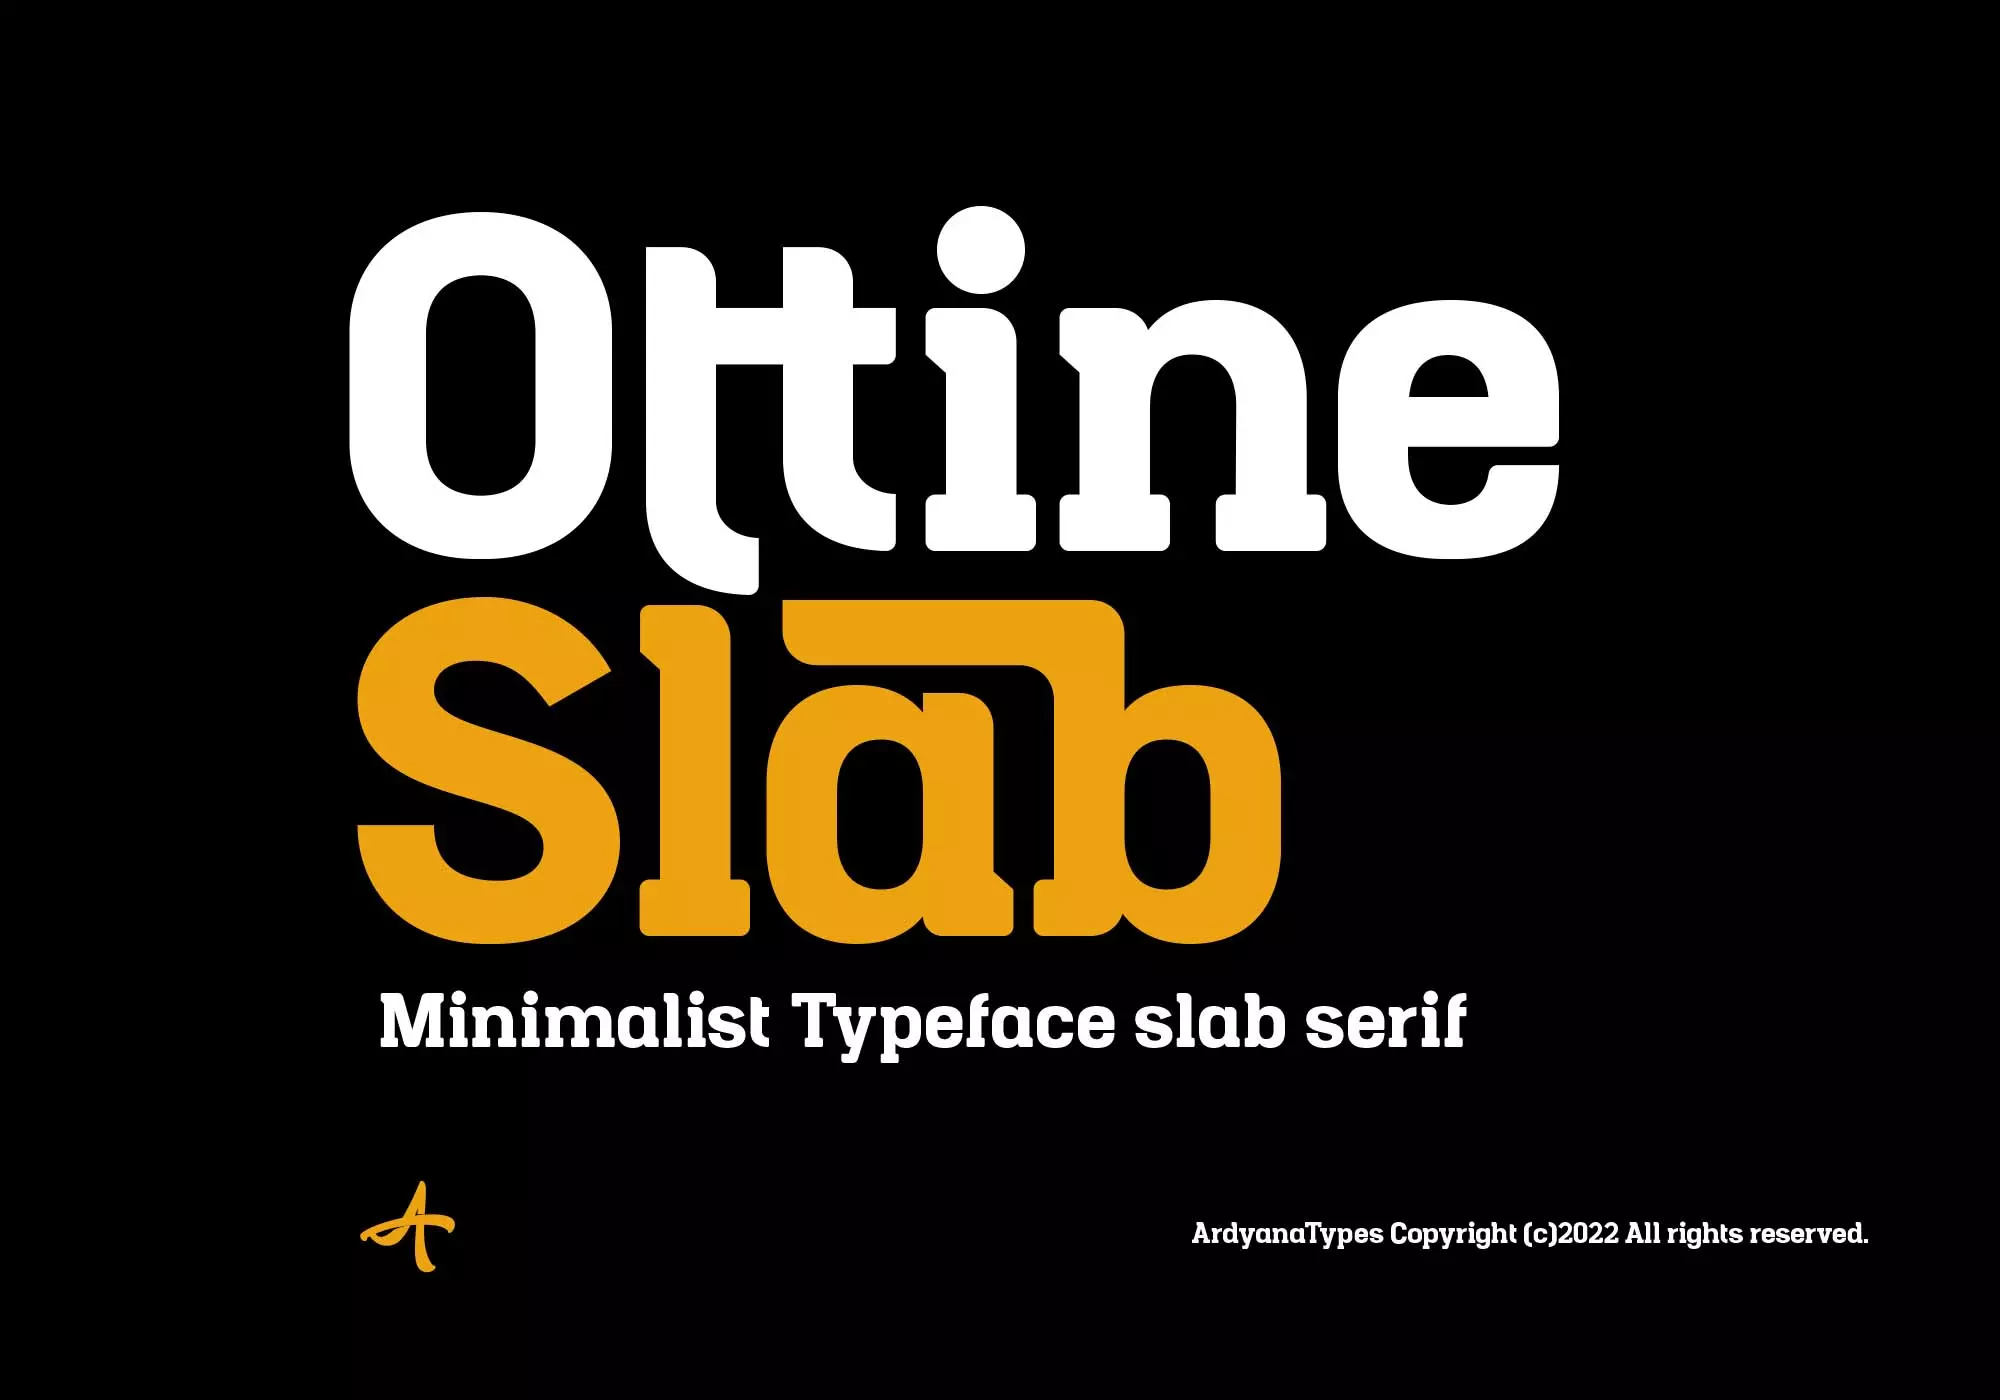 Ottine Slab Typeface